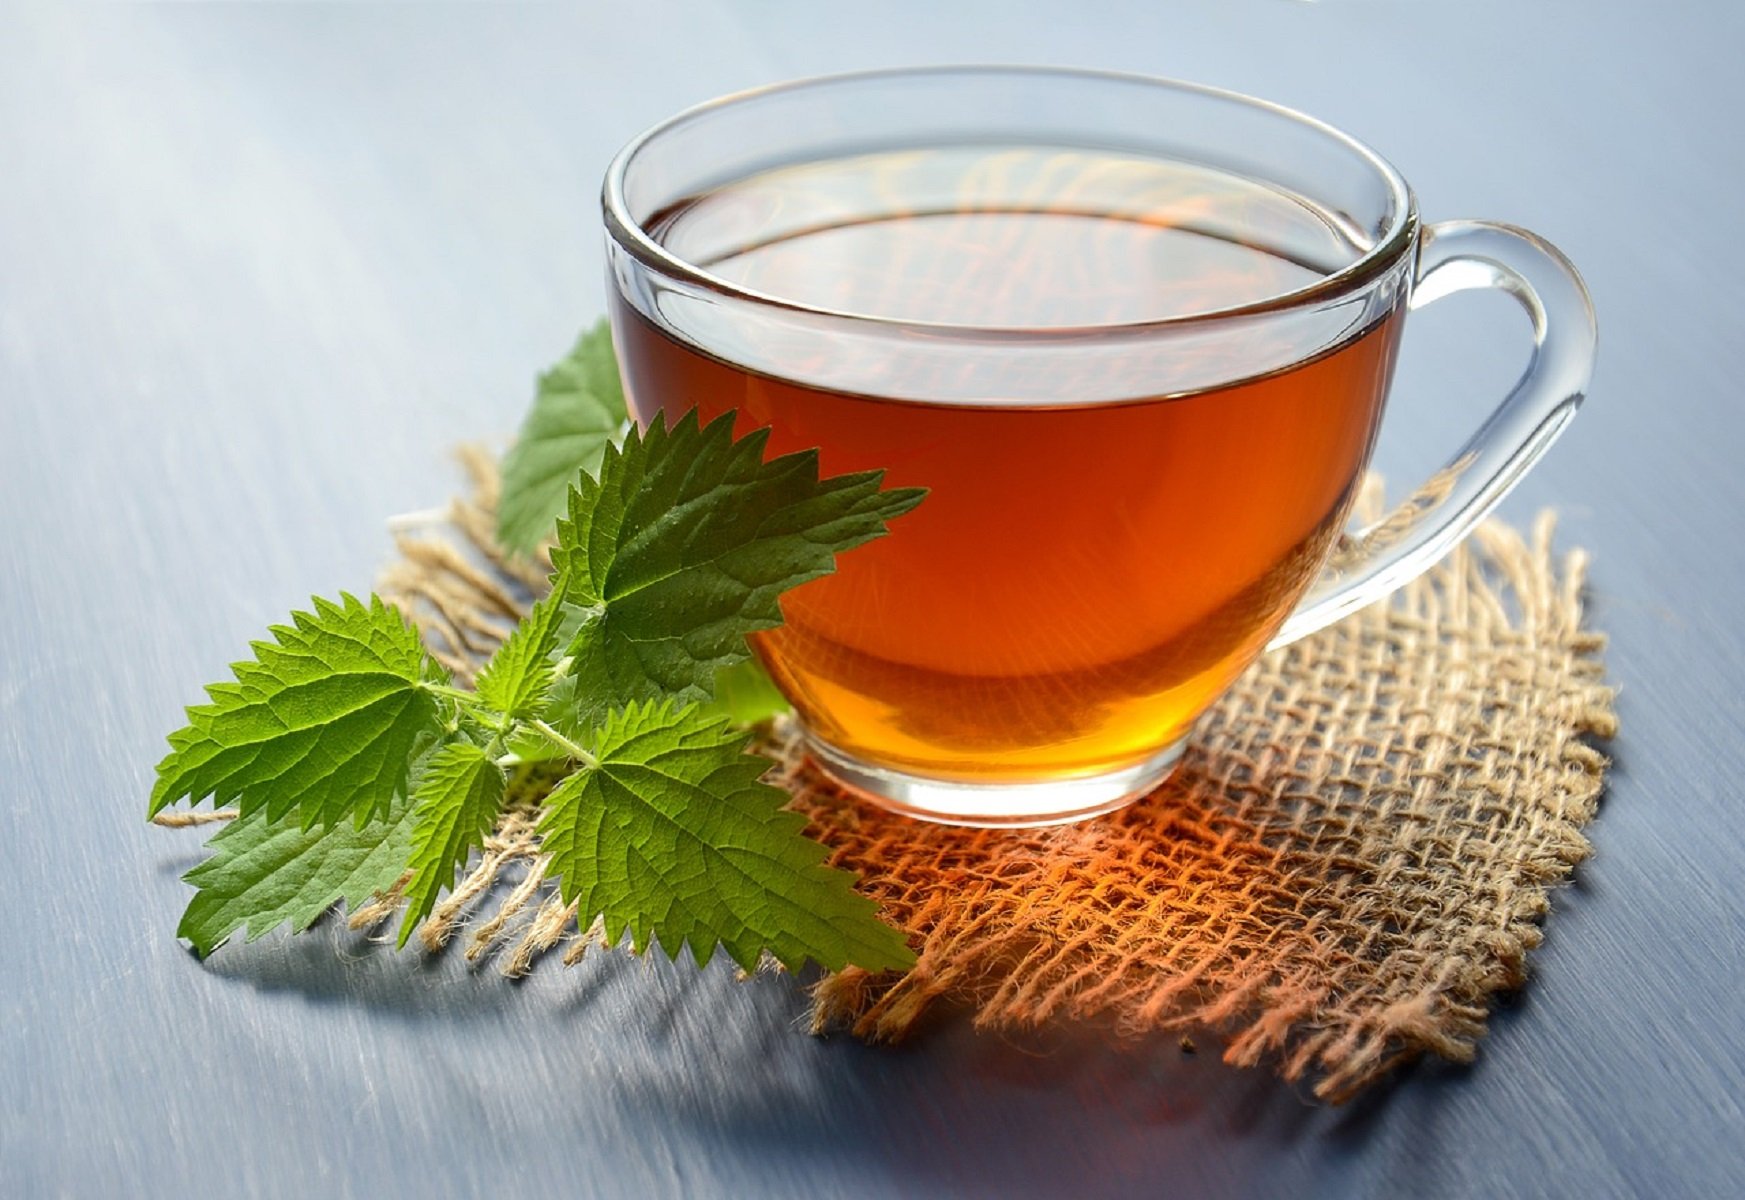 El té de Mercadona que arrasa: ayuda a adelgazar y reduce el estrés